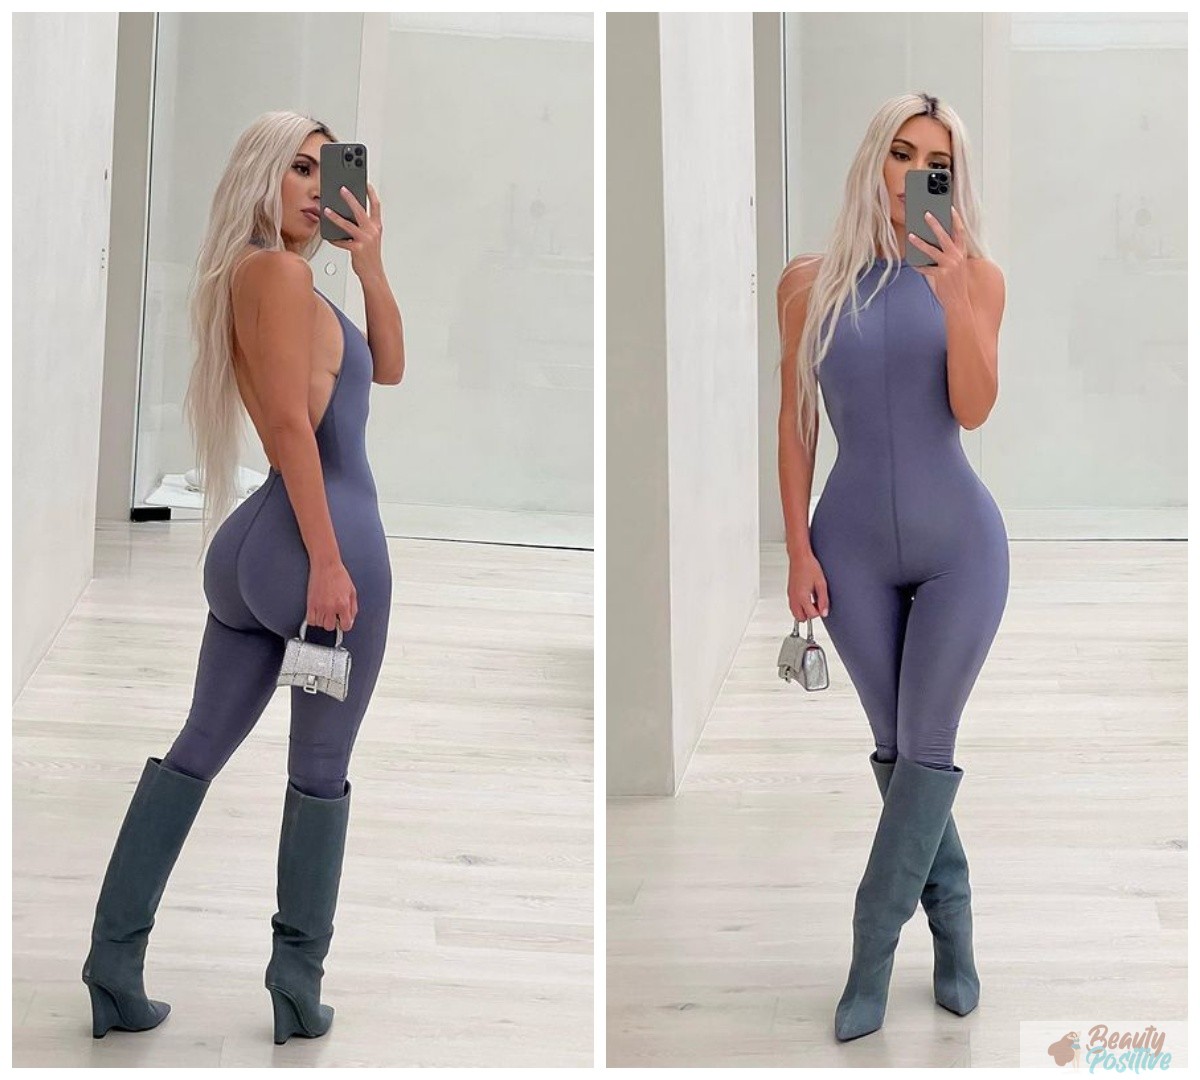 Kardashian in a new body